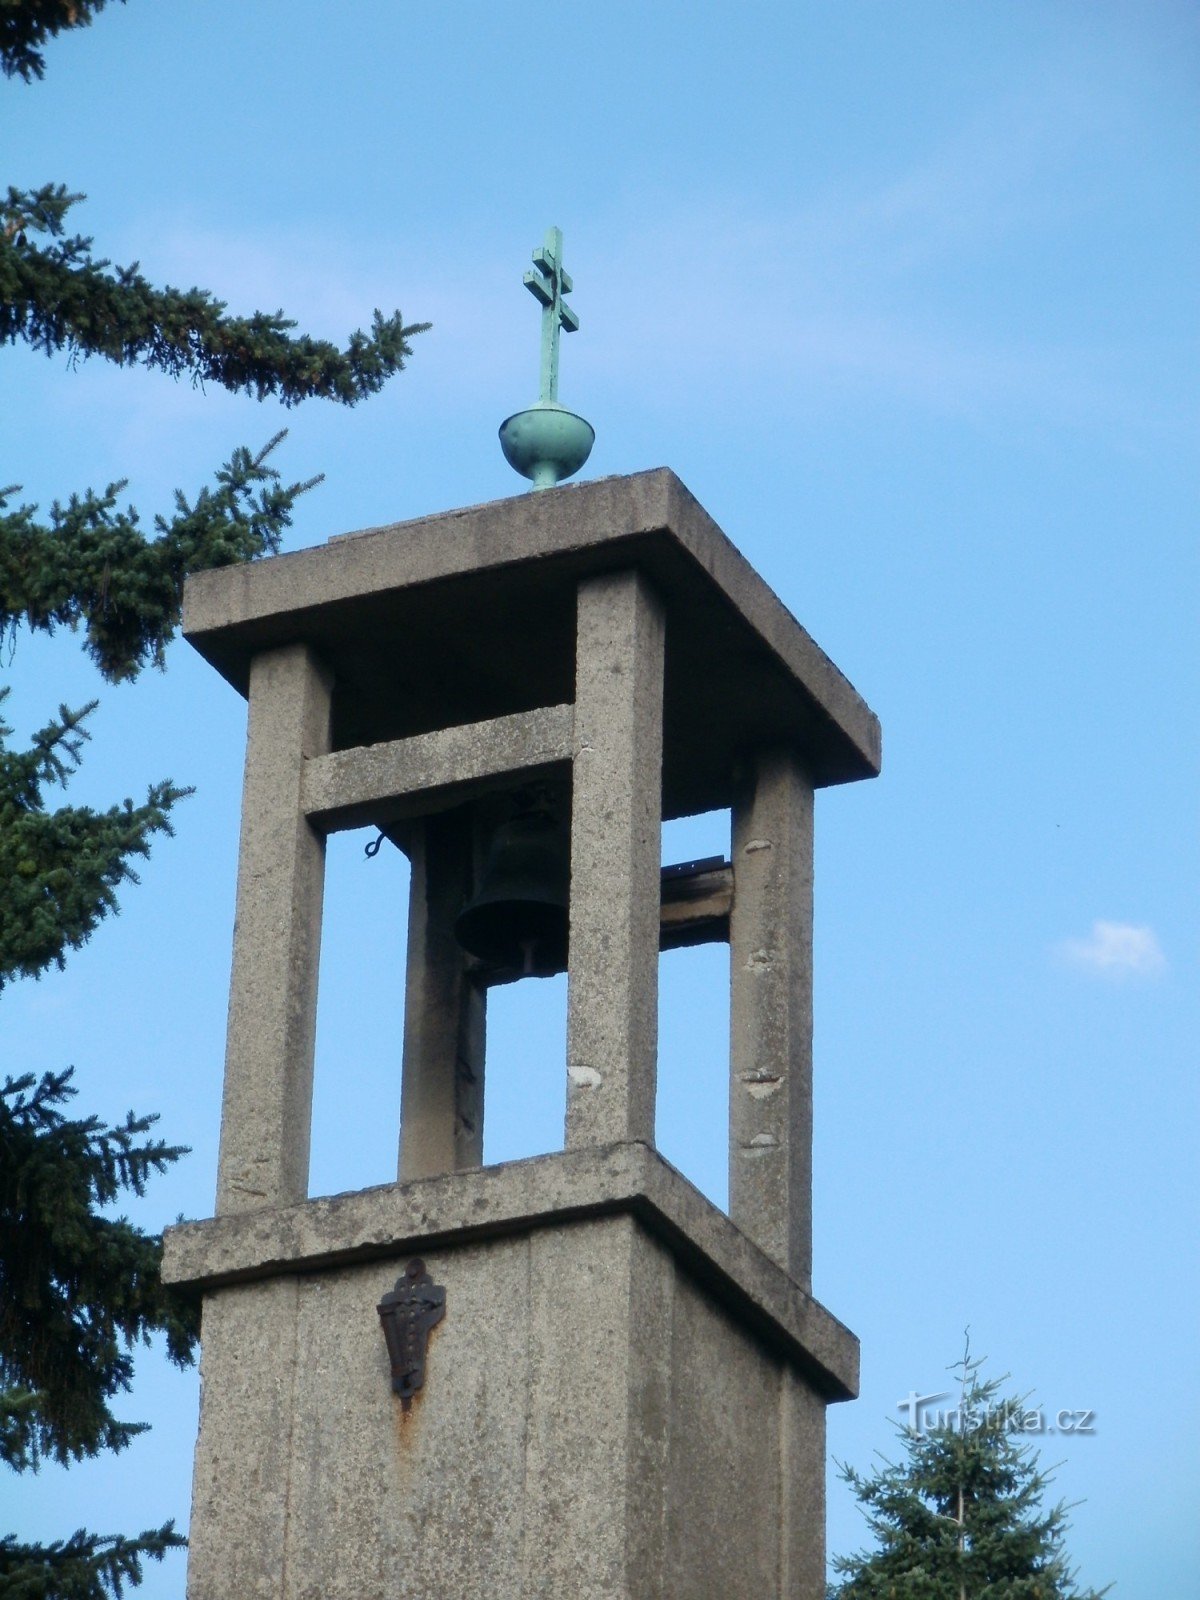 Hradec Králové - tháp chuông ở Pouchov